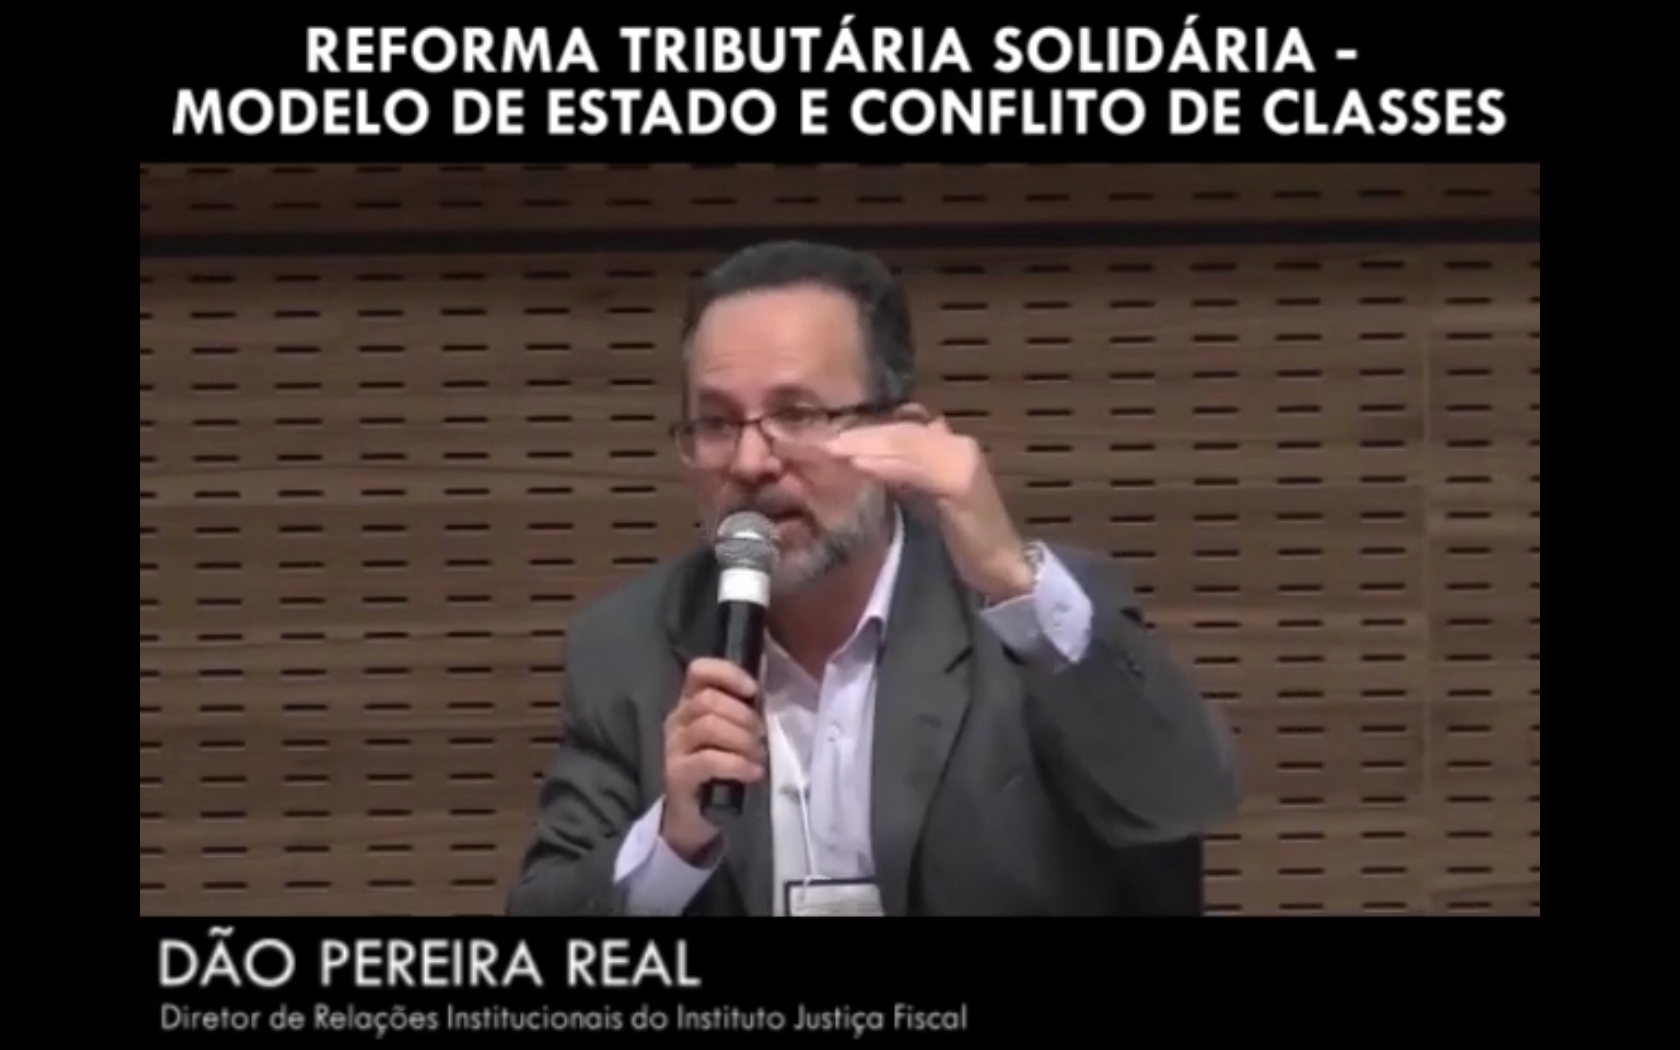 Reforma Tributária Solidária - Modelo de Estado e conflito de classes - Dão Pereira Real